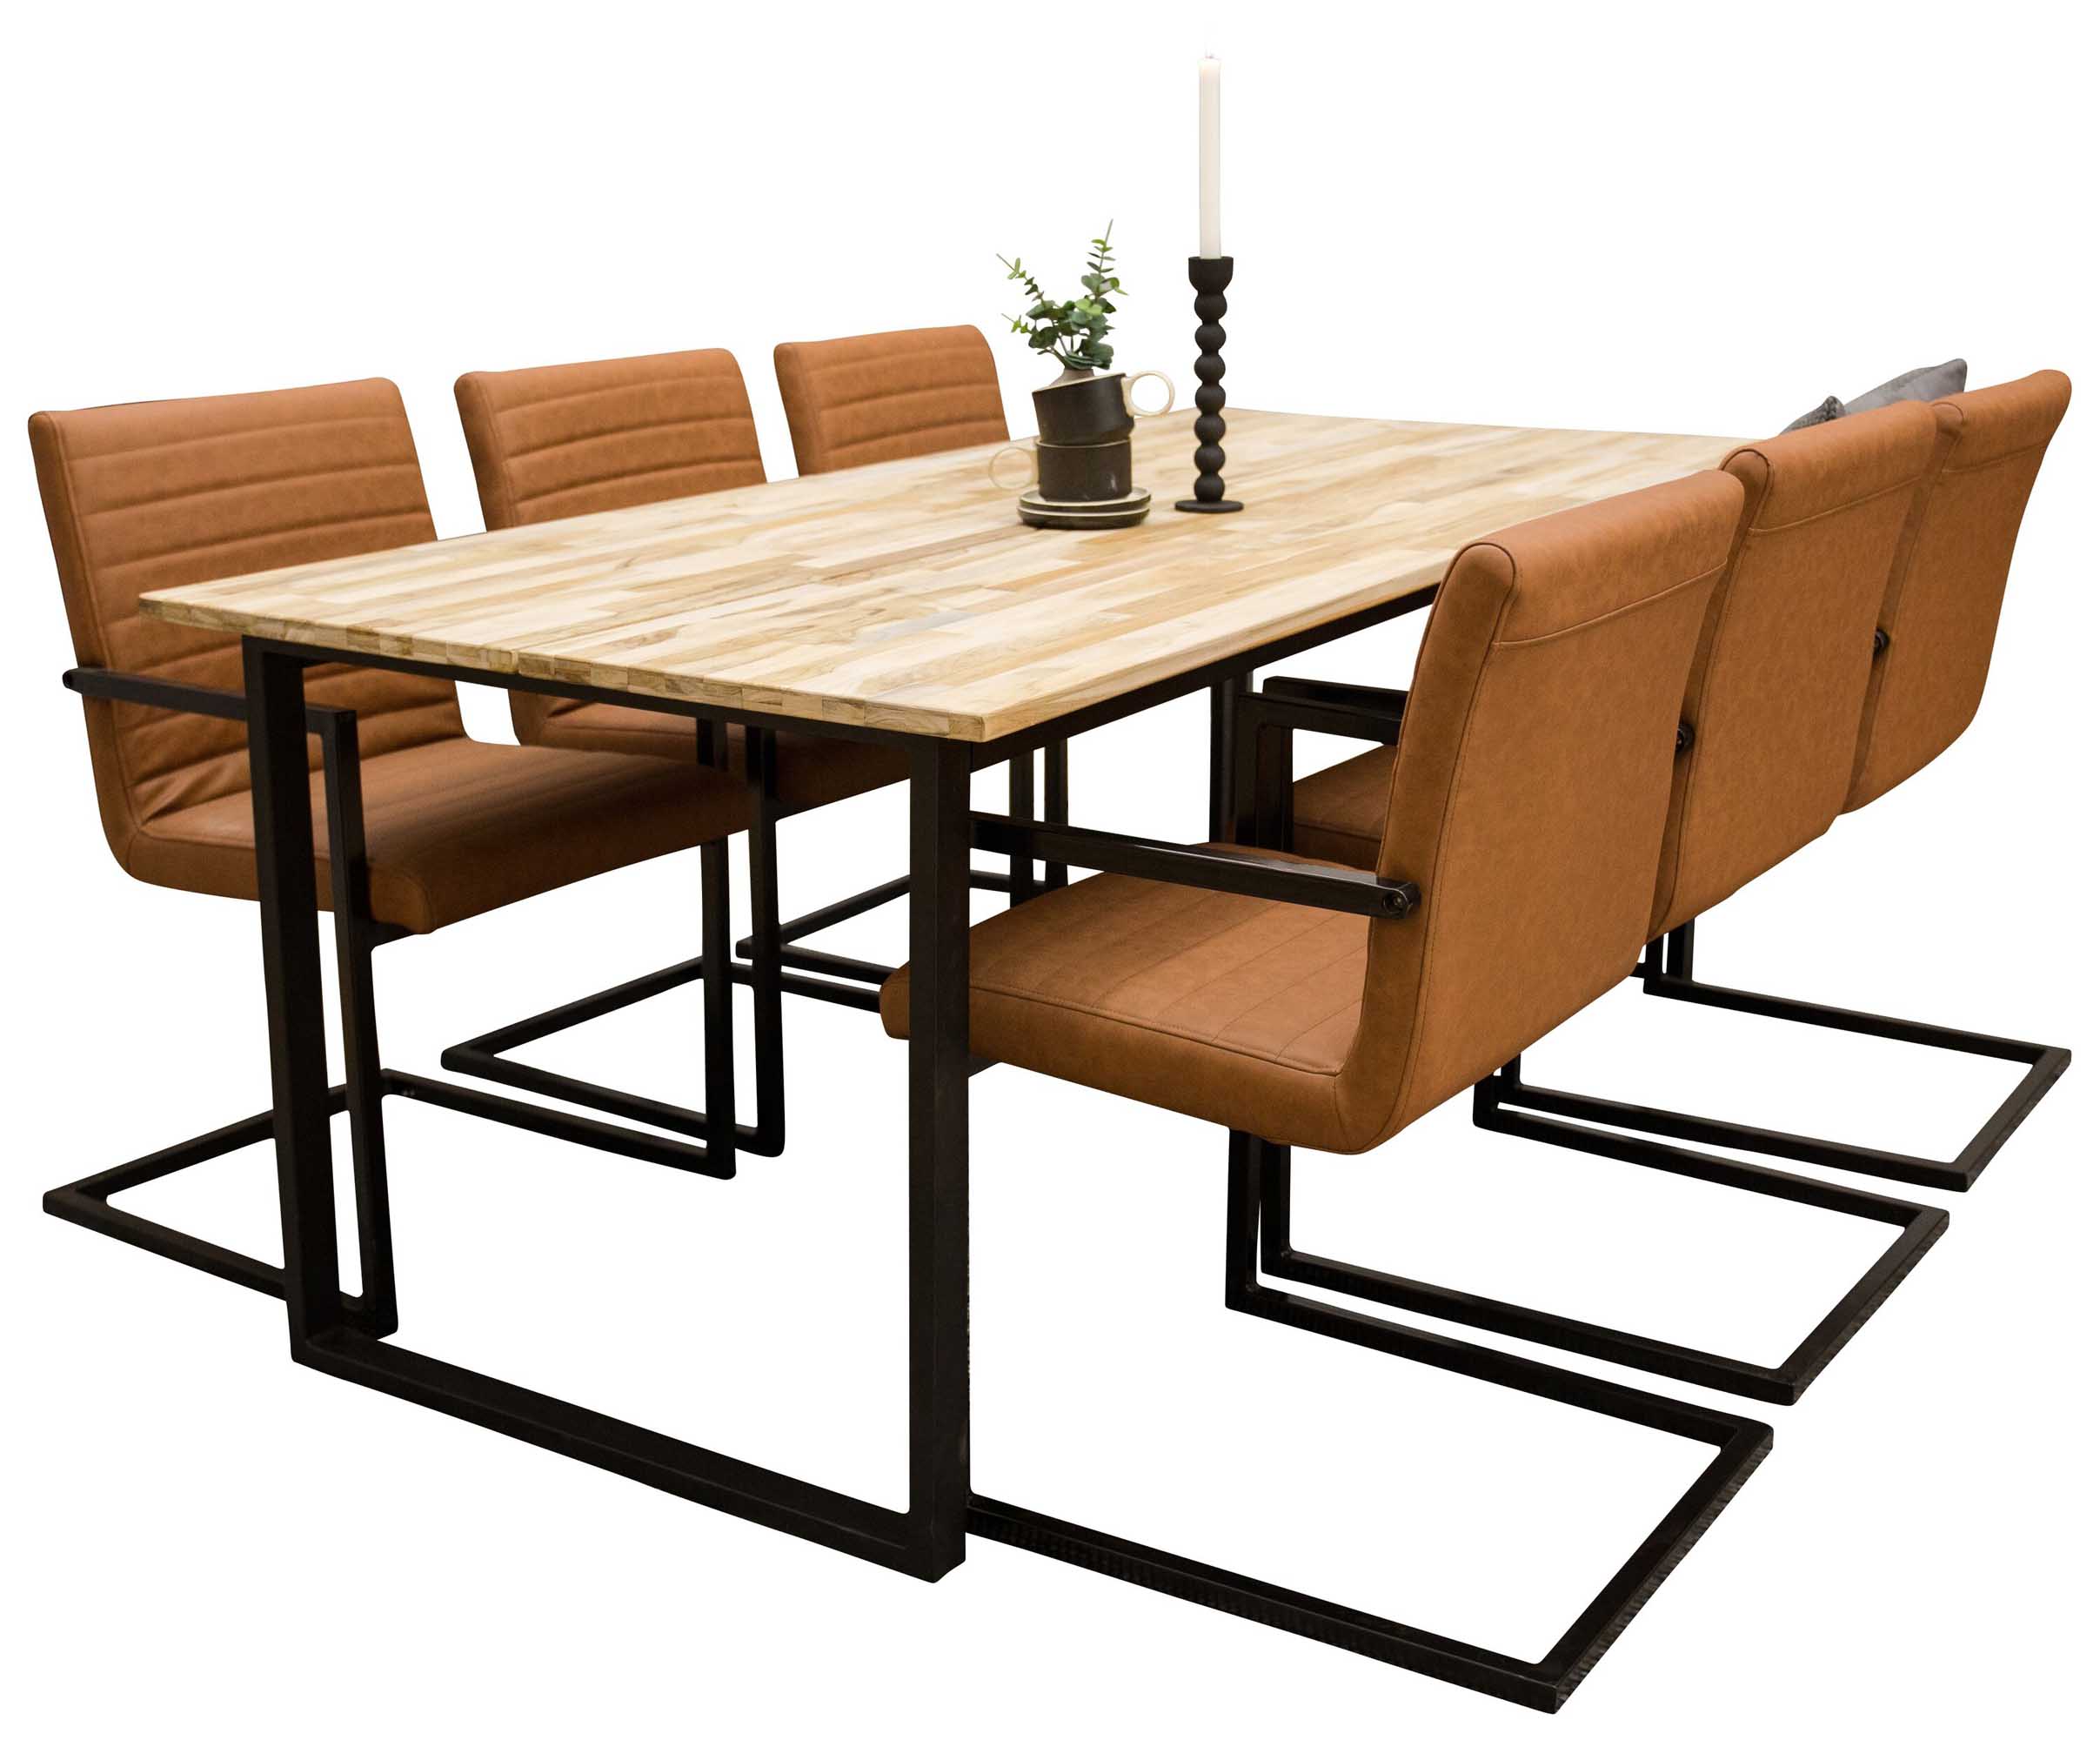 Venture Design Cirebon & Art spisebordssæt Natur/sort 6 st stole & borde 200 x 90 cm